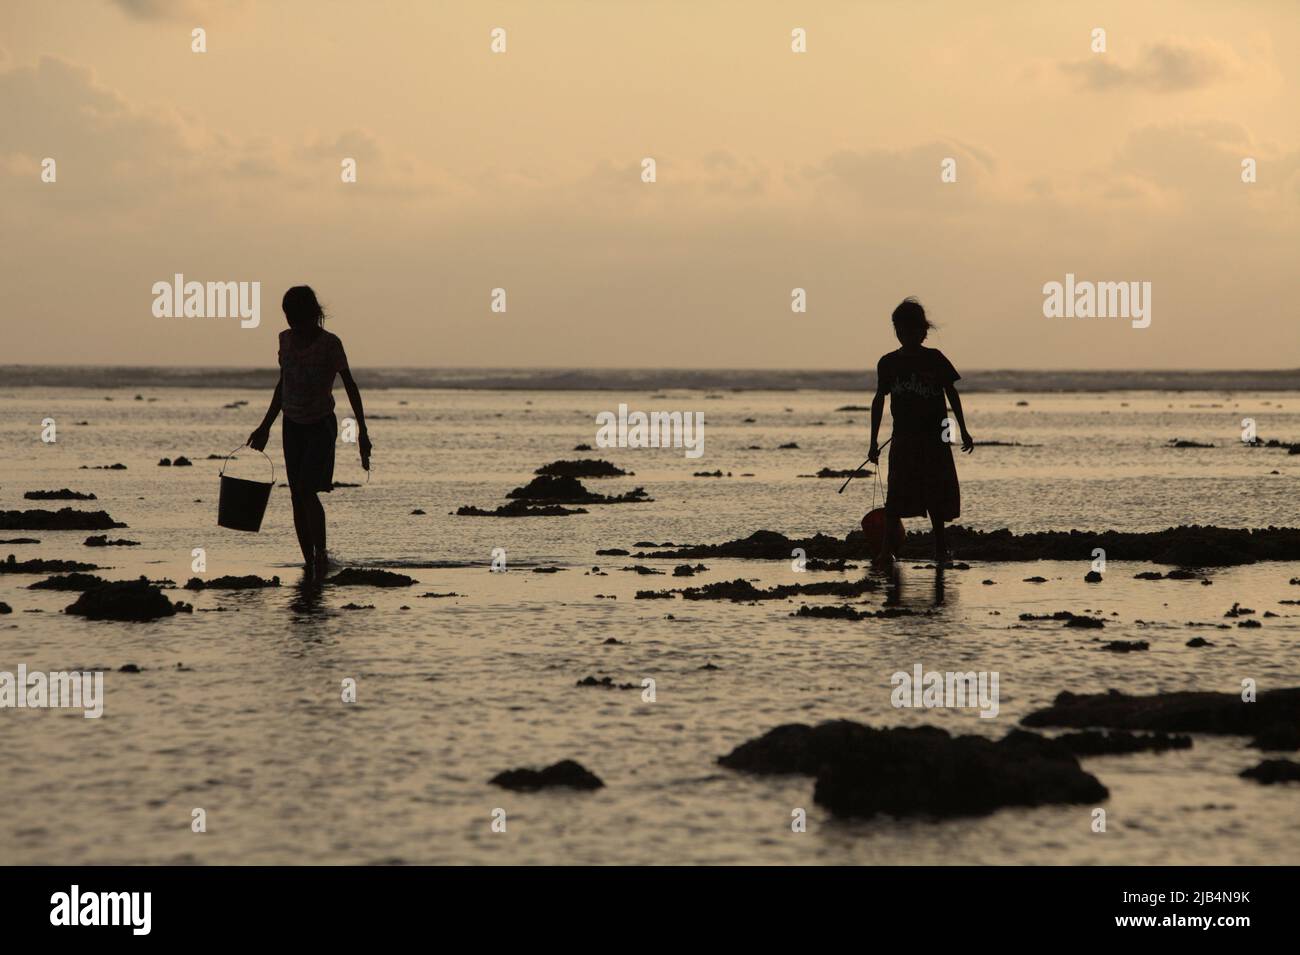 Le giovani donne si sono sfarzate mentre camminano su una spiaggia rocciosa durante la bassa marea, trasportando secchi di plastica per raccogliere i prodotti del mare, una fonte alternativa di cibo stagionale a Sumba Island, East Nusa Tenggara, Indonesia. Foto Stock